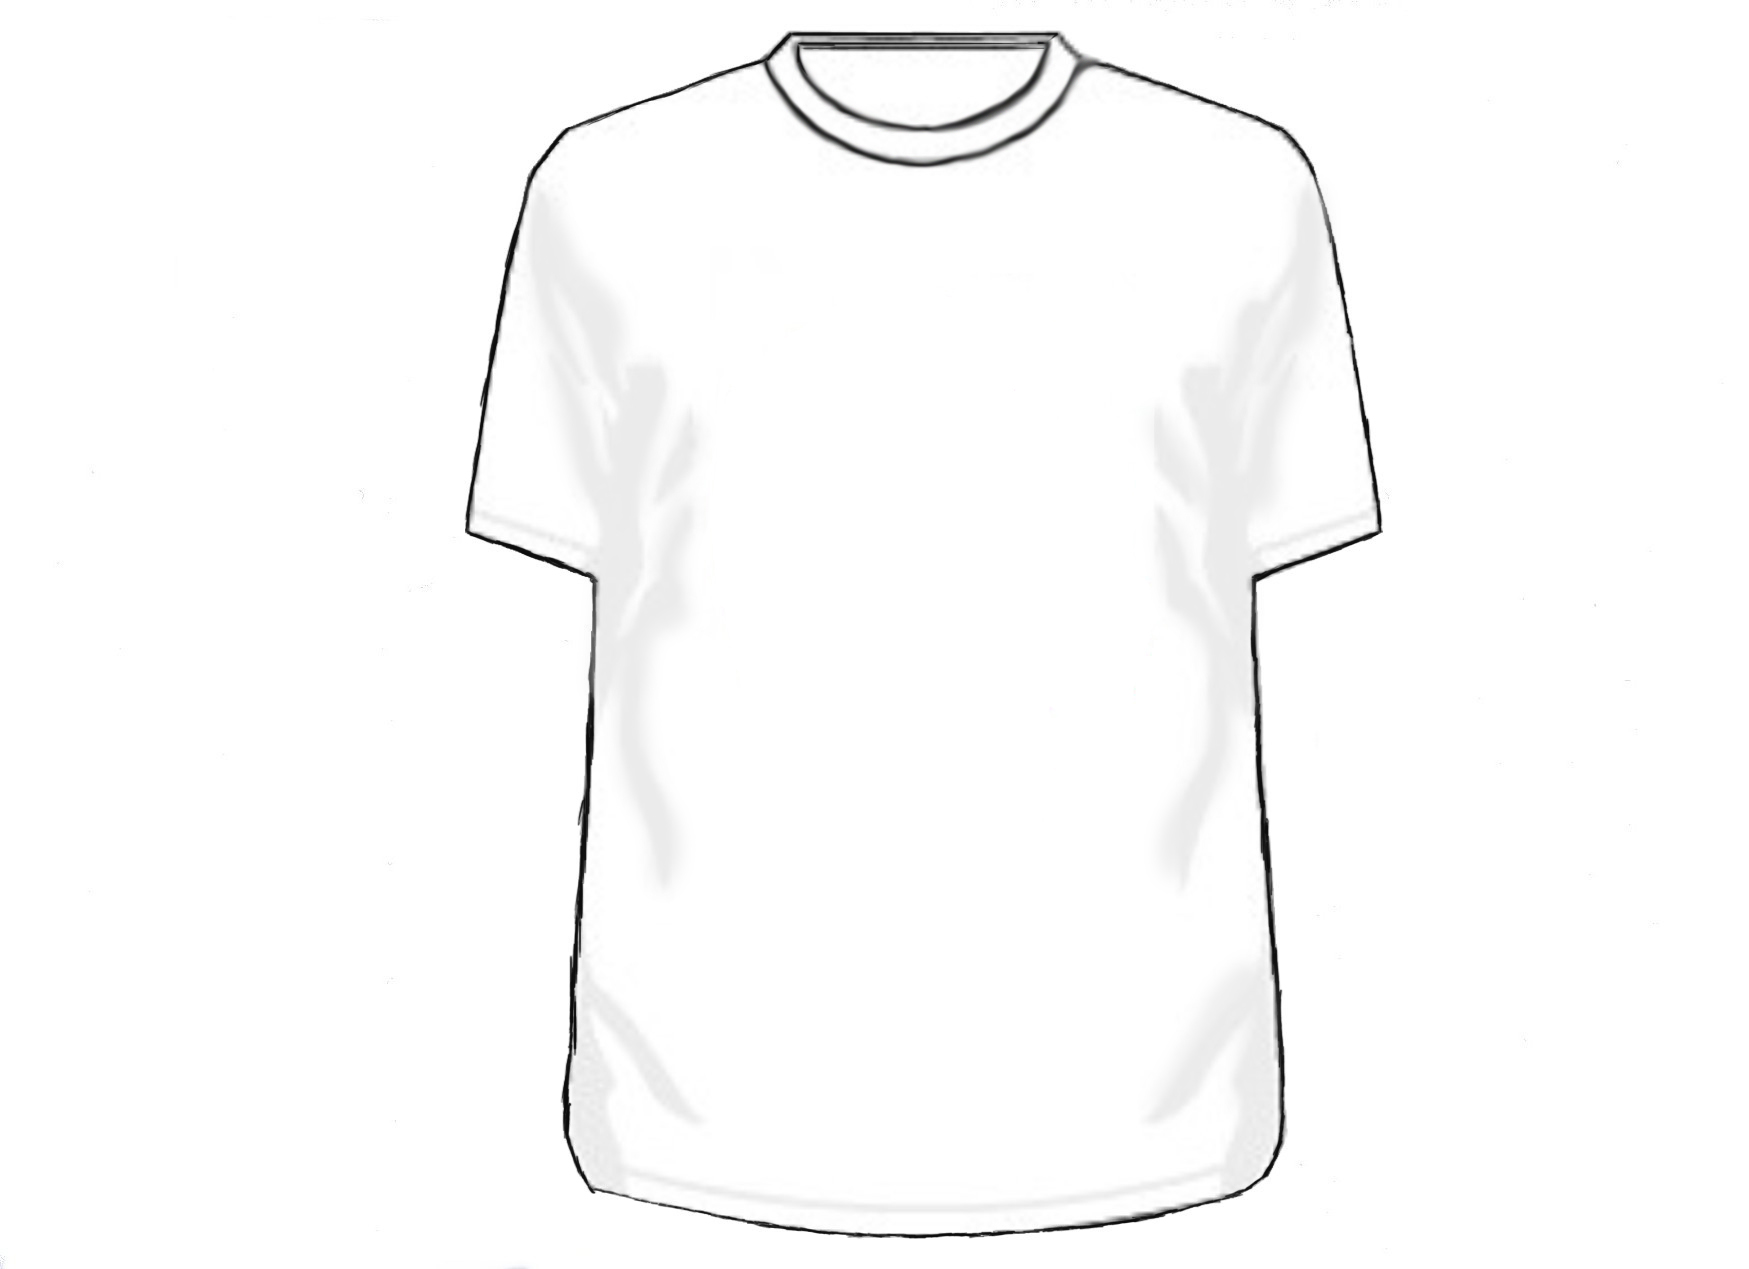 Shirt Template Design